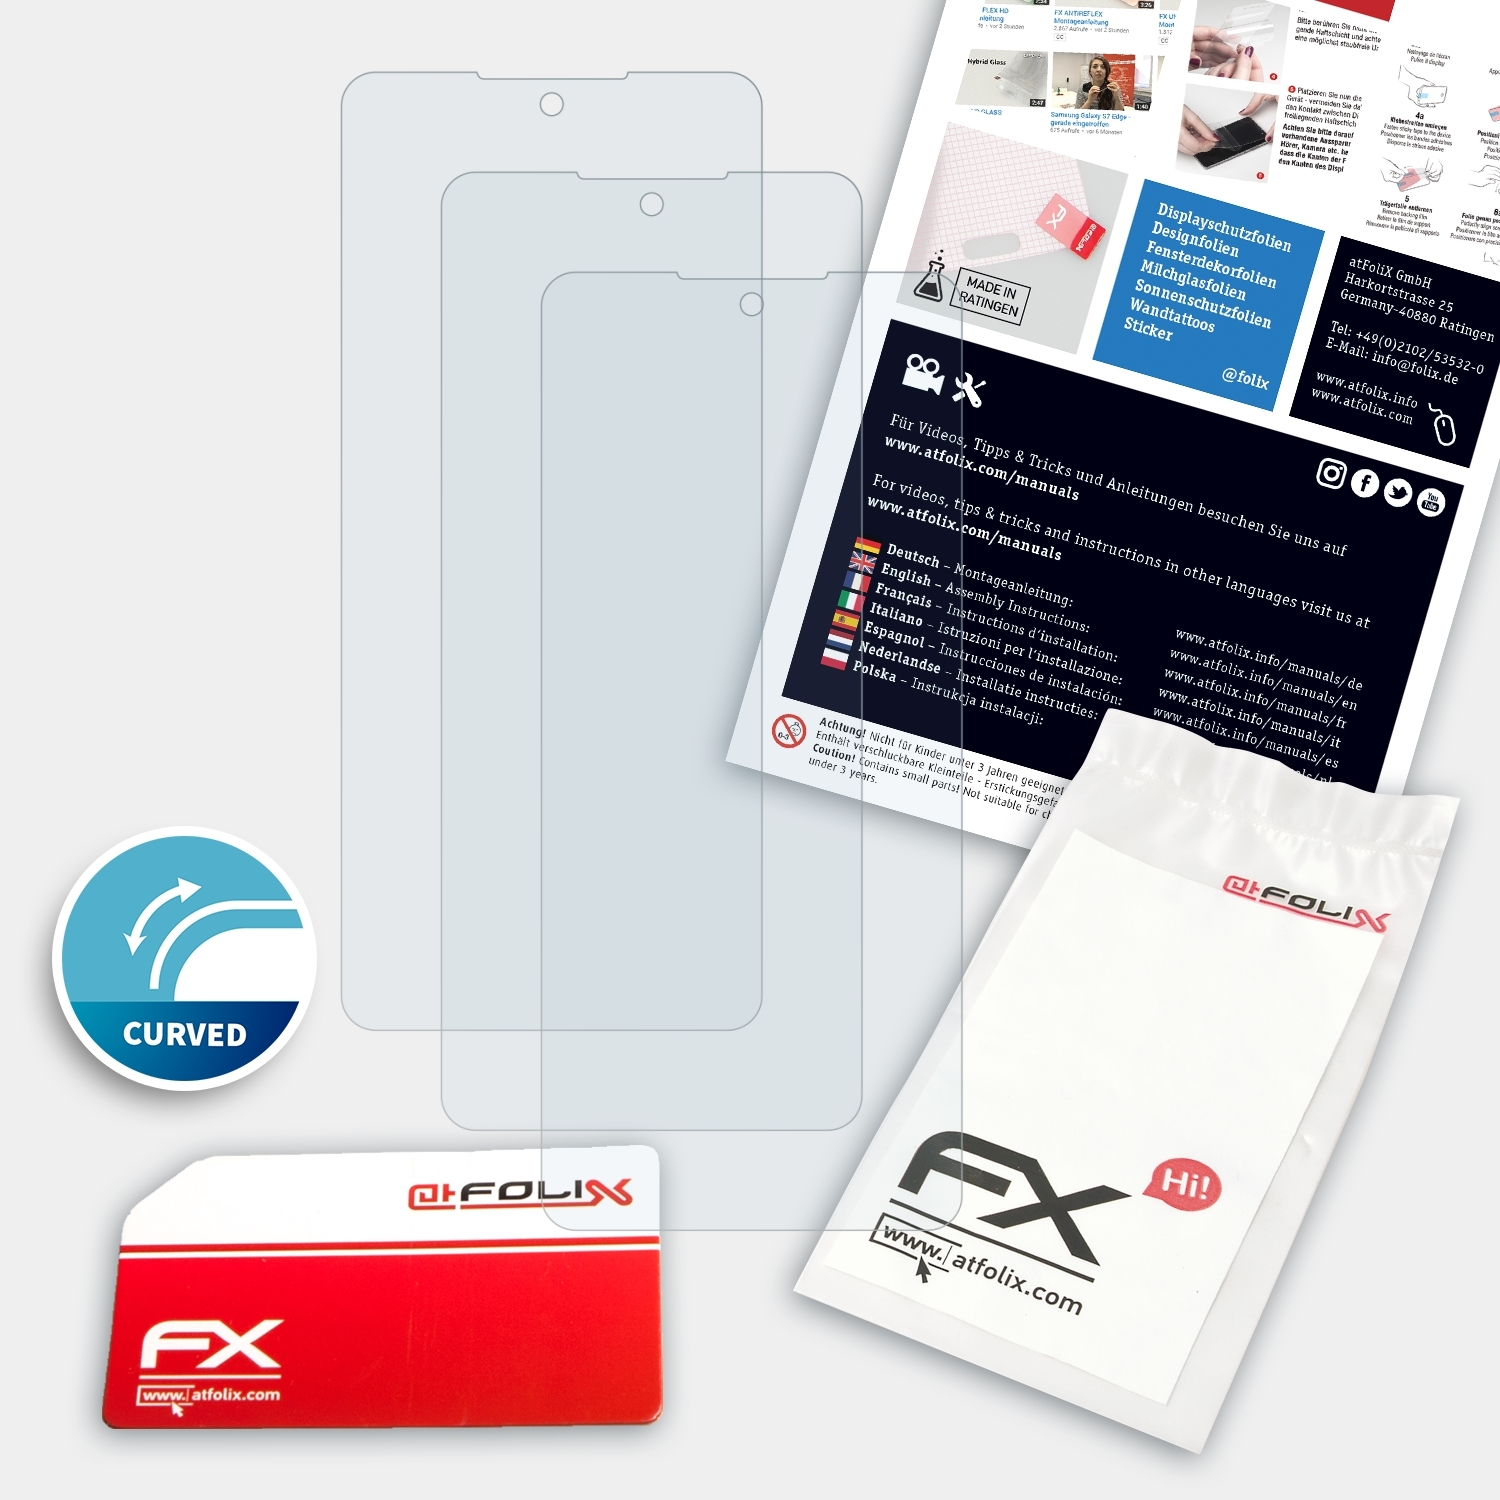 ATFOLIX 3x FX-ActiFleX Displayschutz(für K71) LG